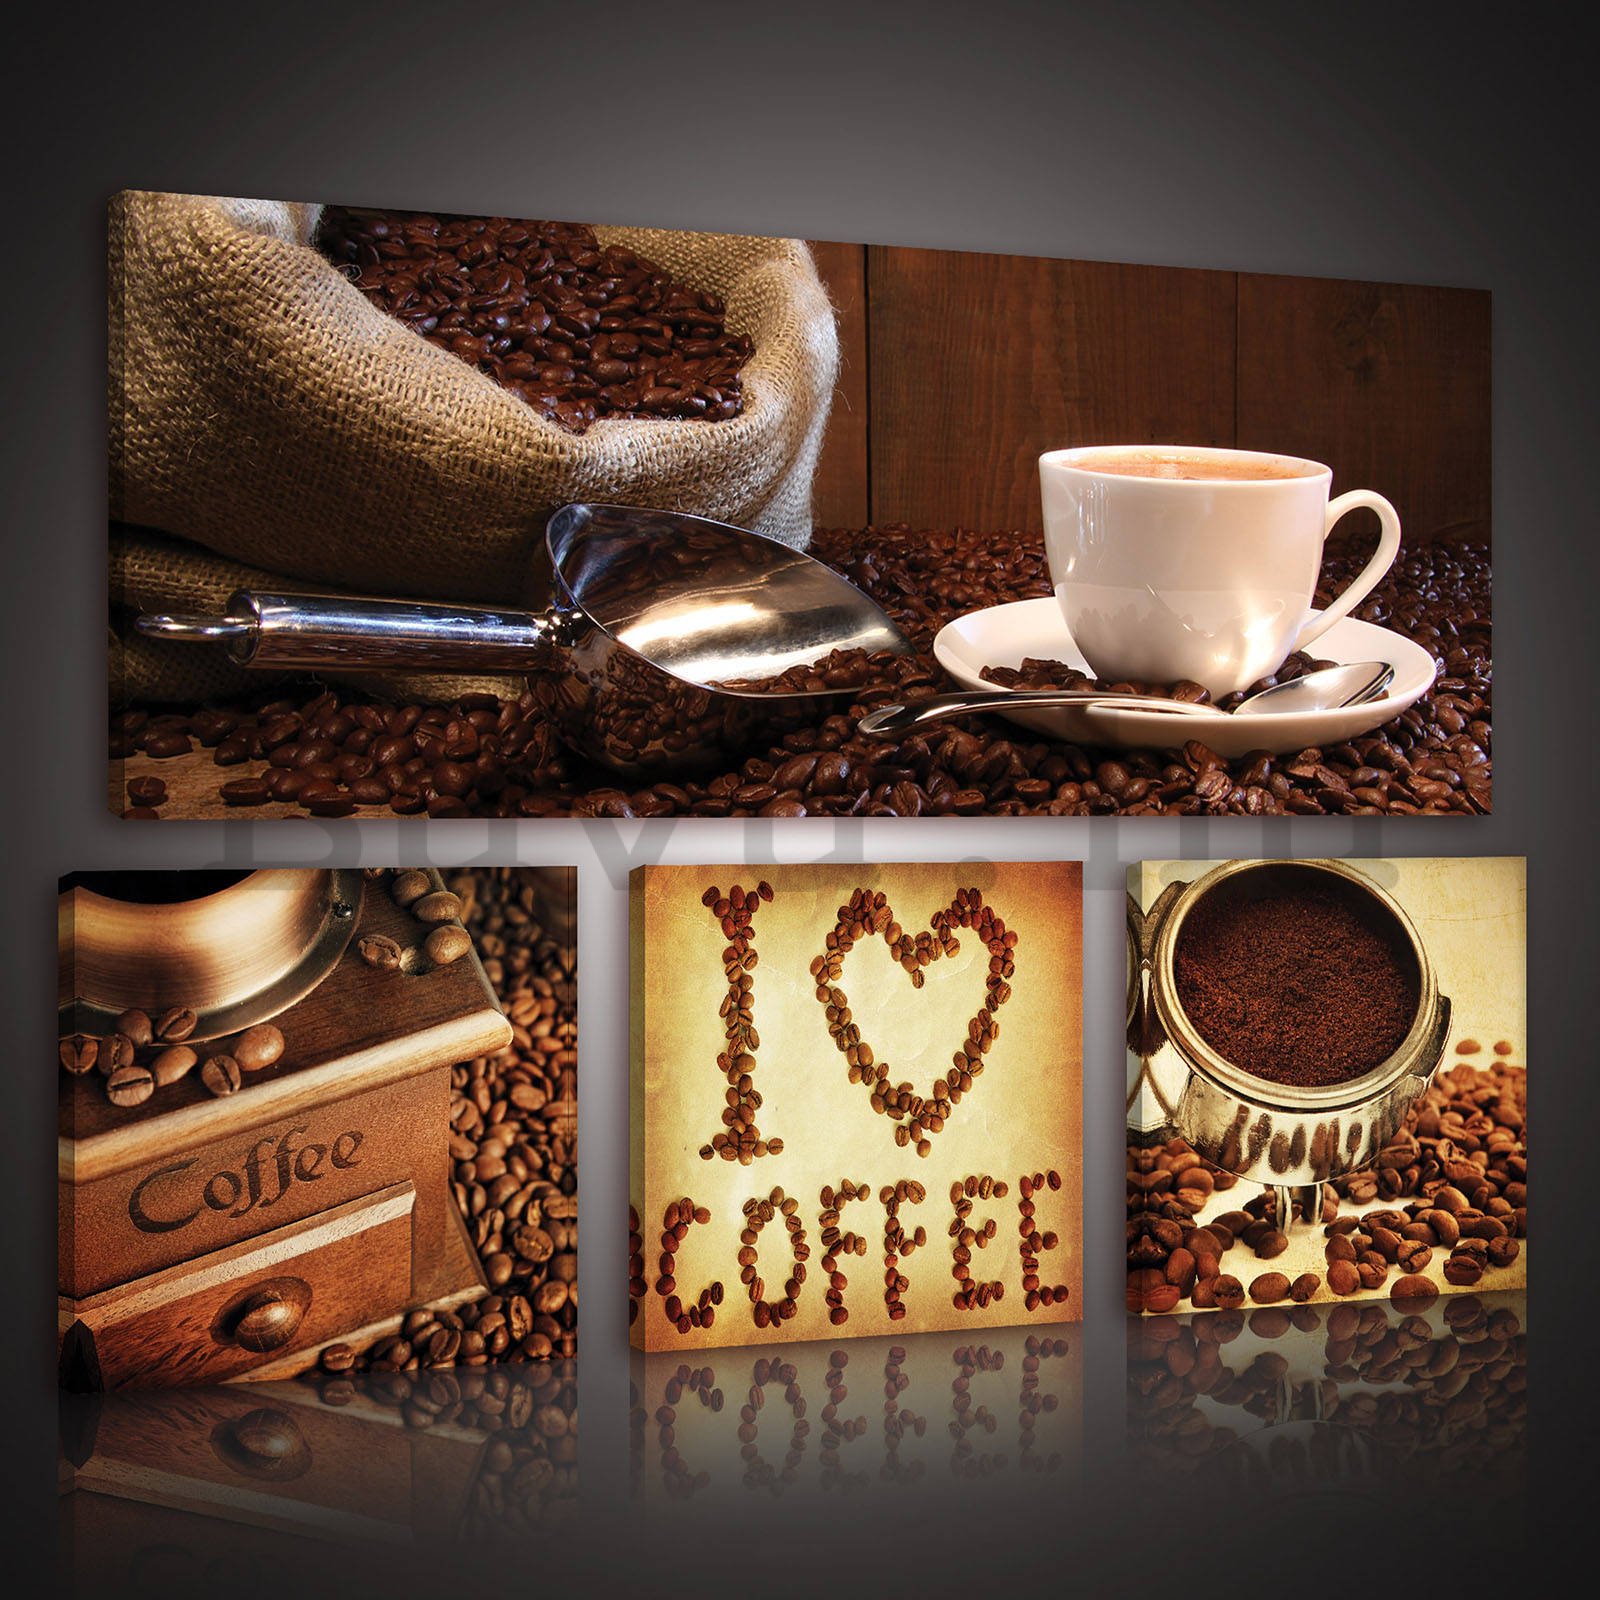 Vászonkép: Kávé  - készlet 1 db 80x30 cm és 3 db 25,8x24,8 cm